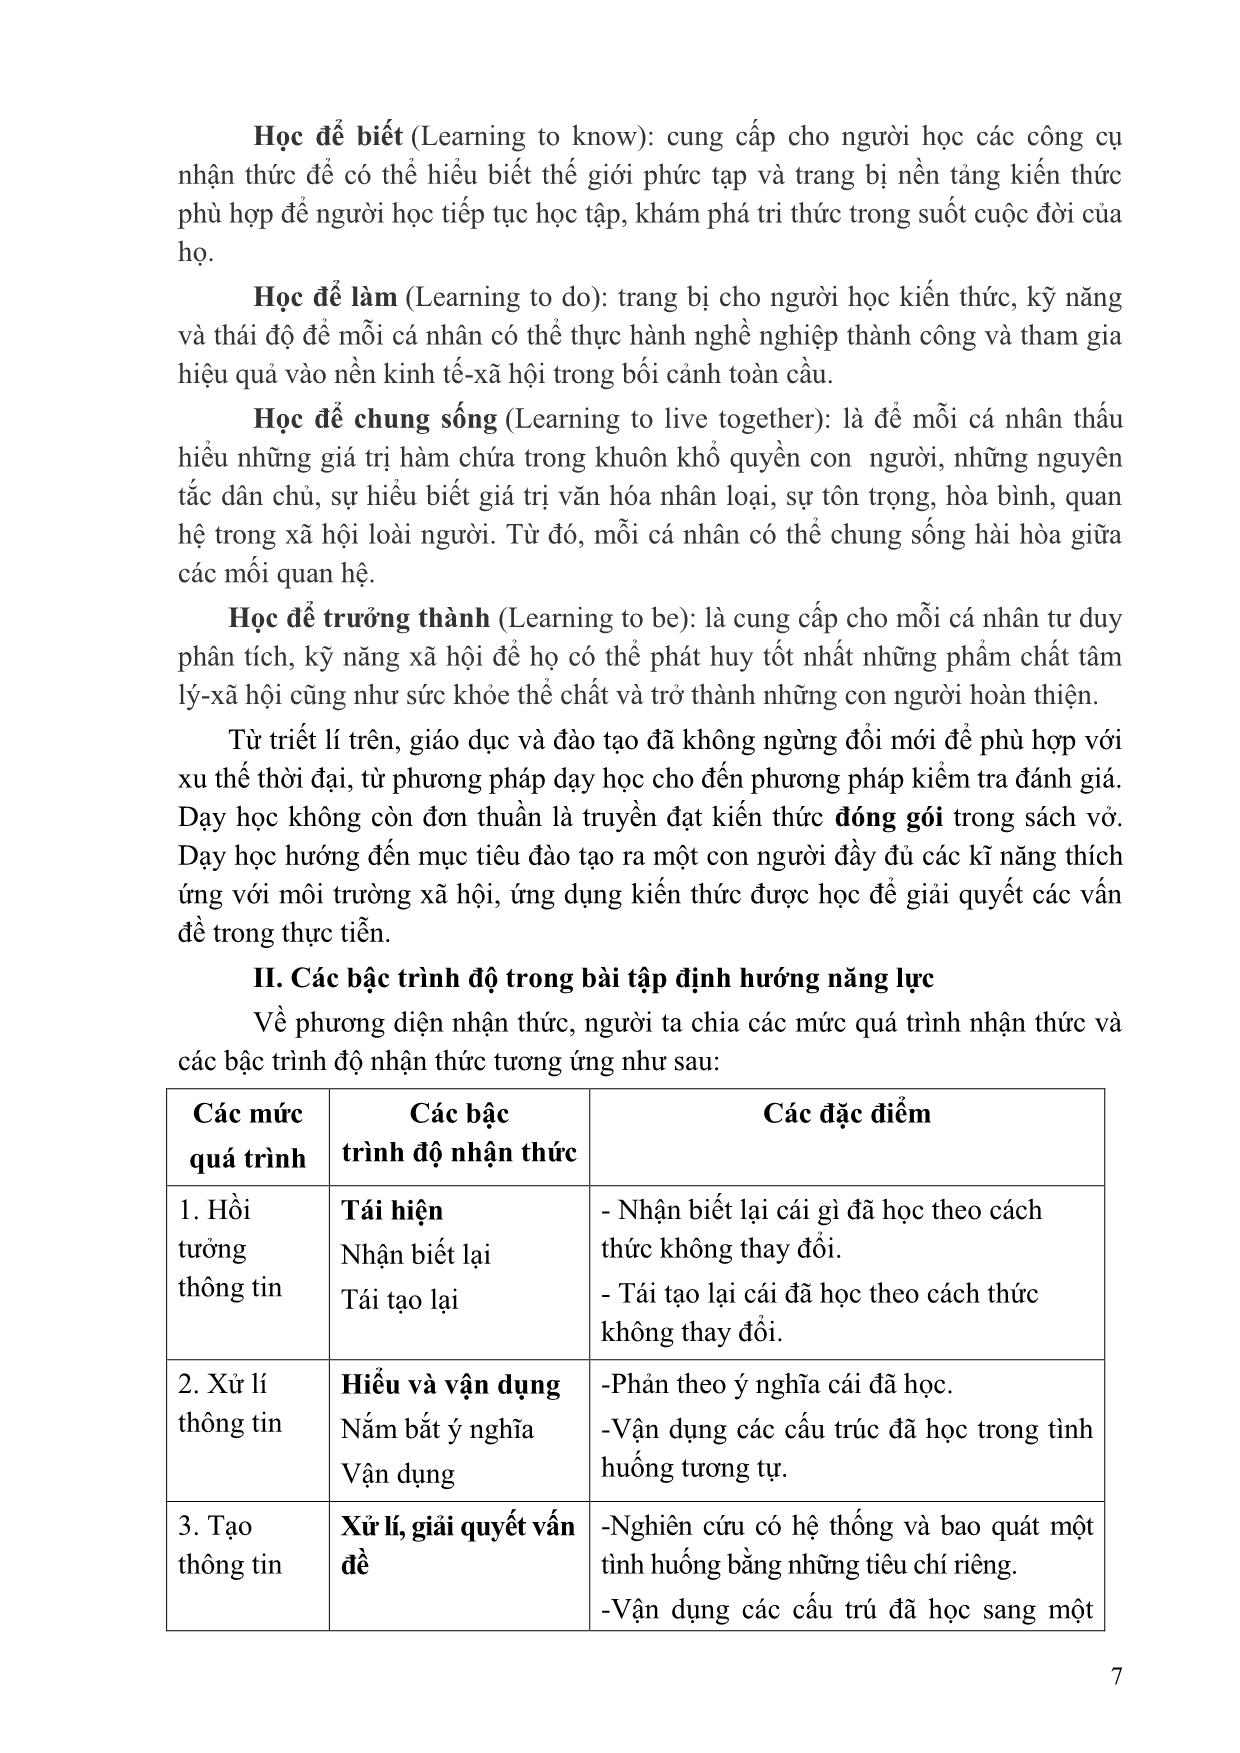 Phát triển năng lực giao tiếp Tiếng Anh cho học sinh tiểu học thông qua các hoạt động ứng dụng, bài tập tình huống trang 8